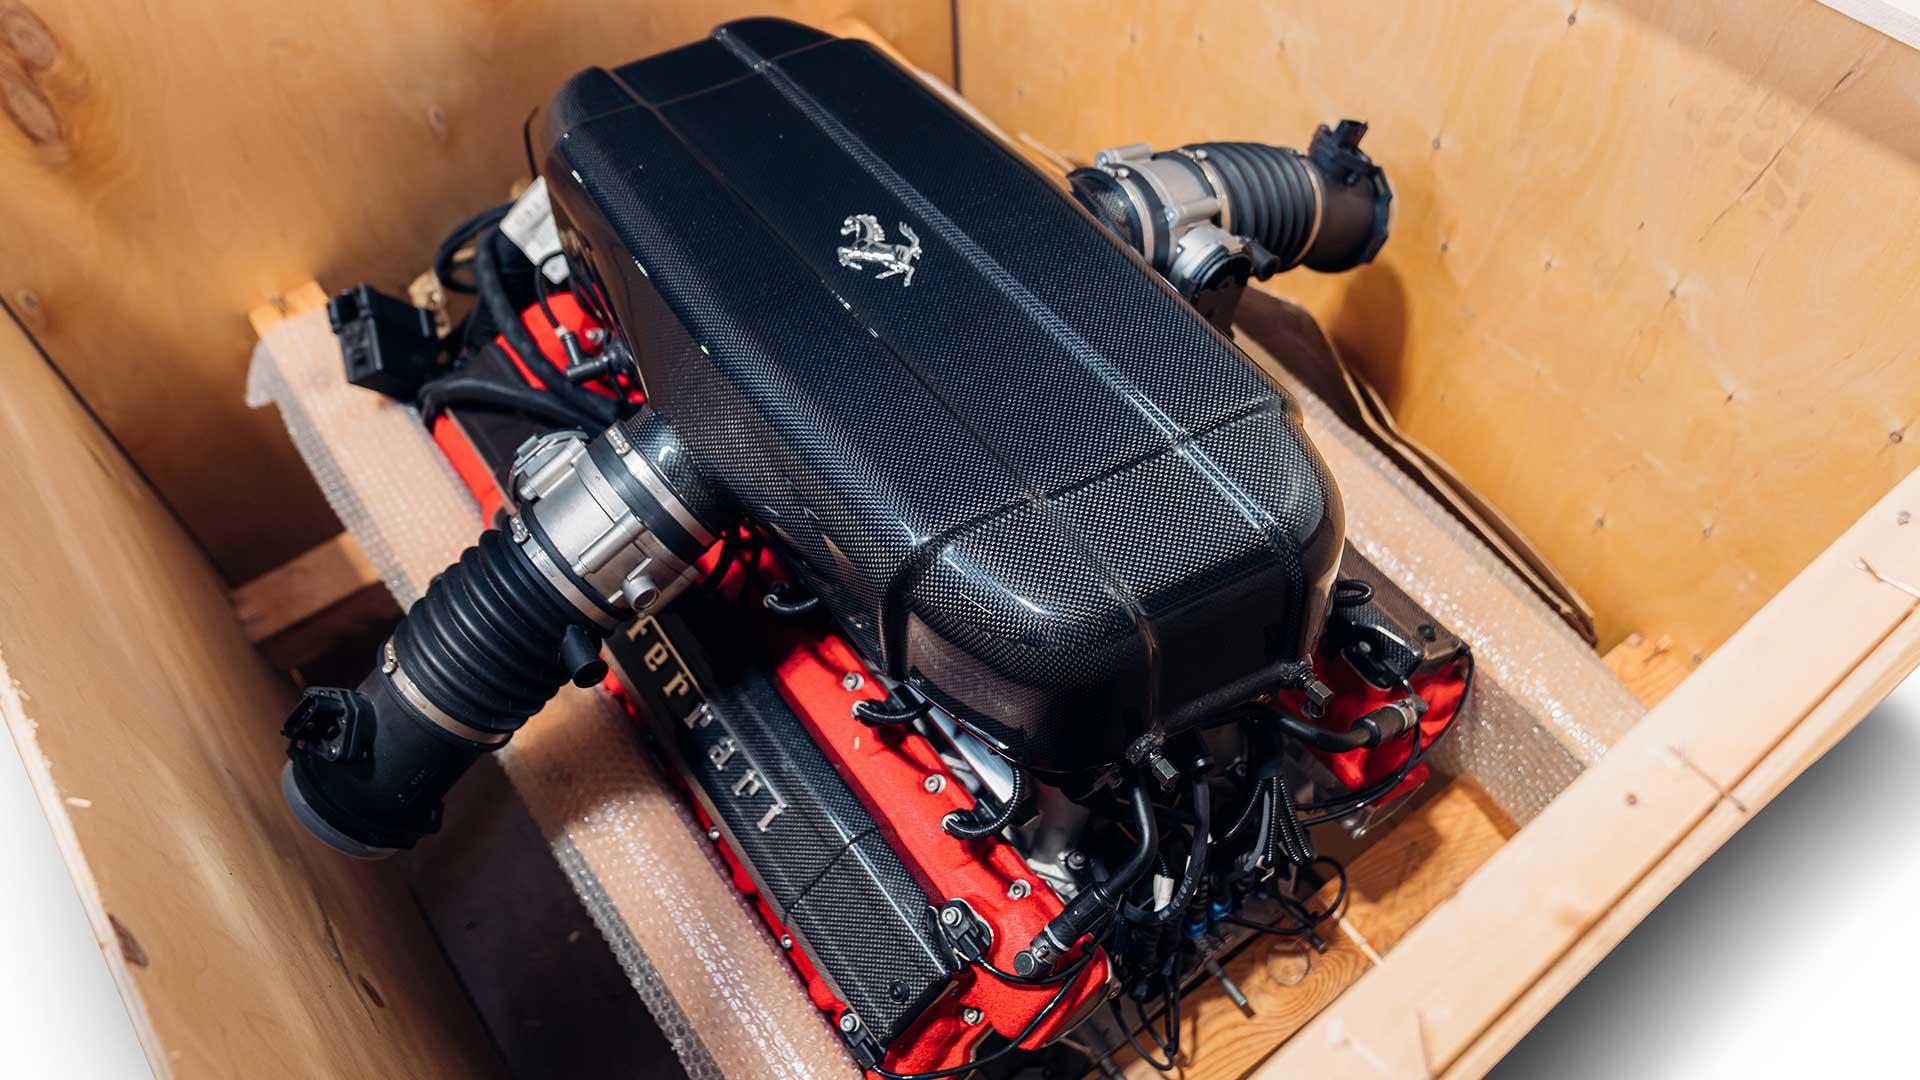 Motor van de Ferrari Enzo in een krat schuin voor